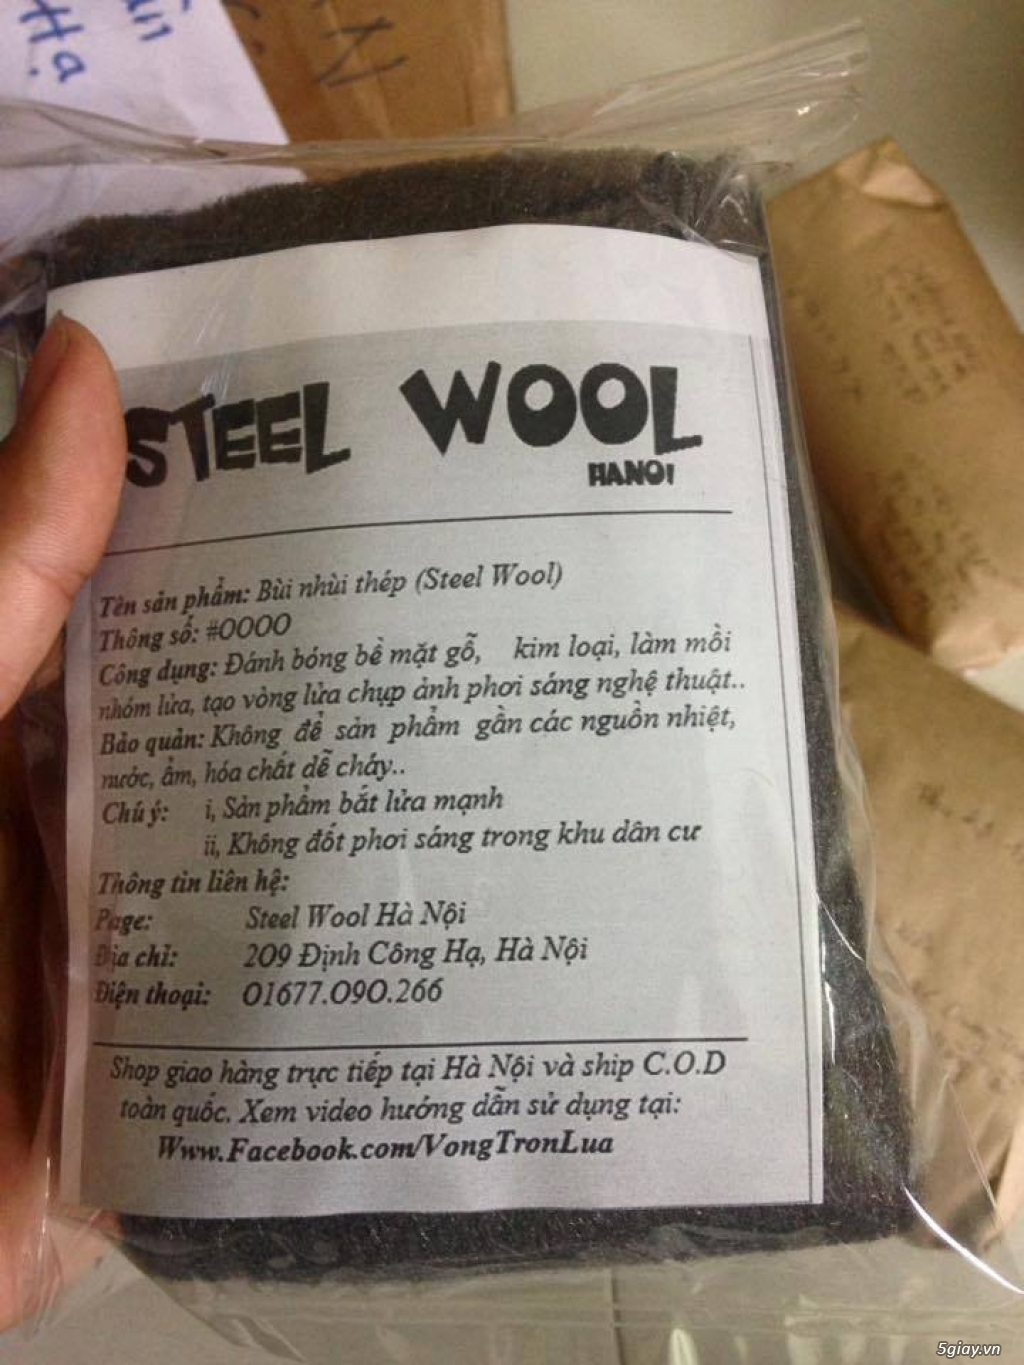 Cung cấp Steel Wool, Bùi Nhùi Thép giá rẻ nhất. - 3